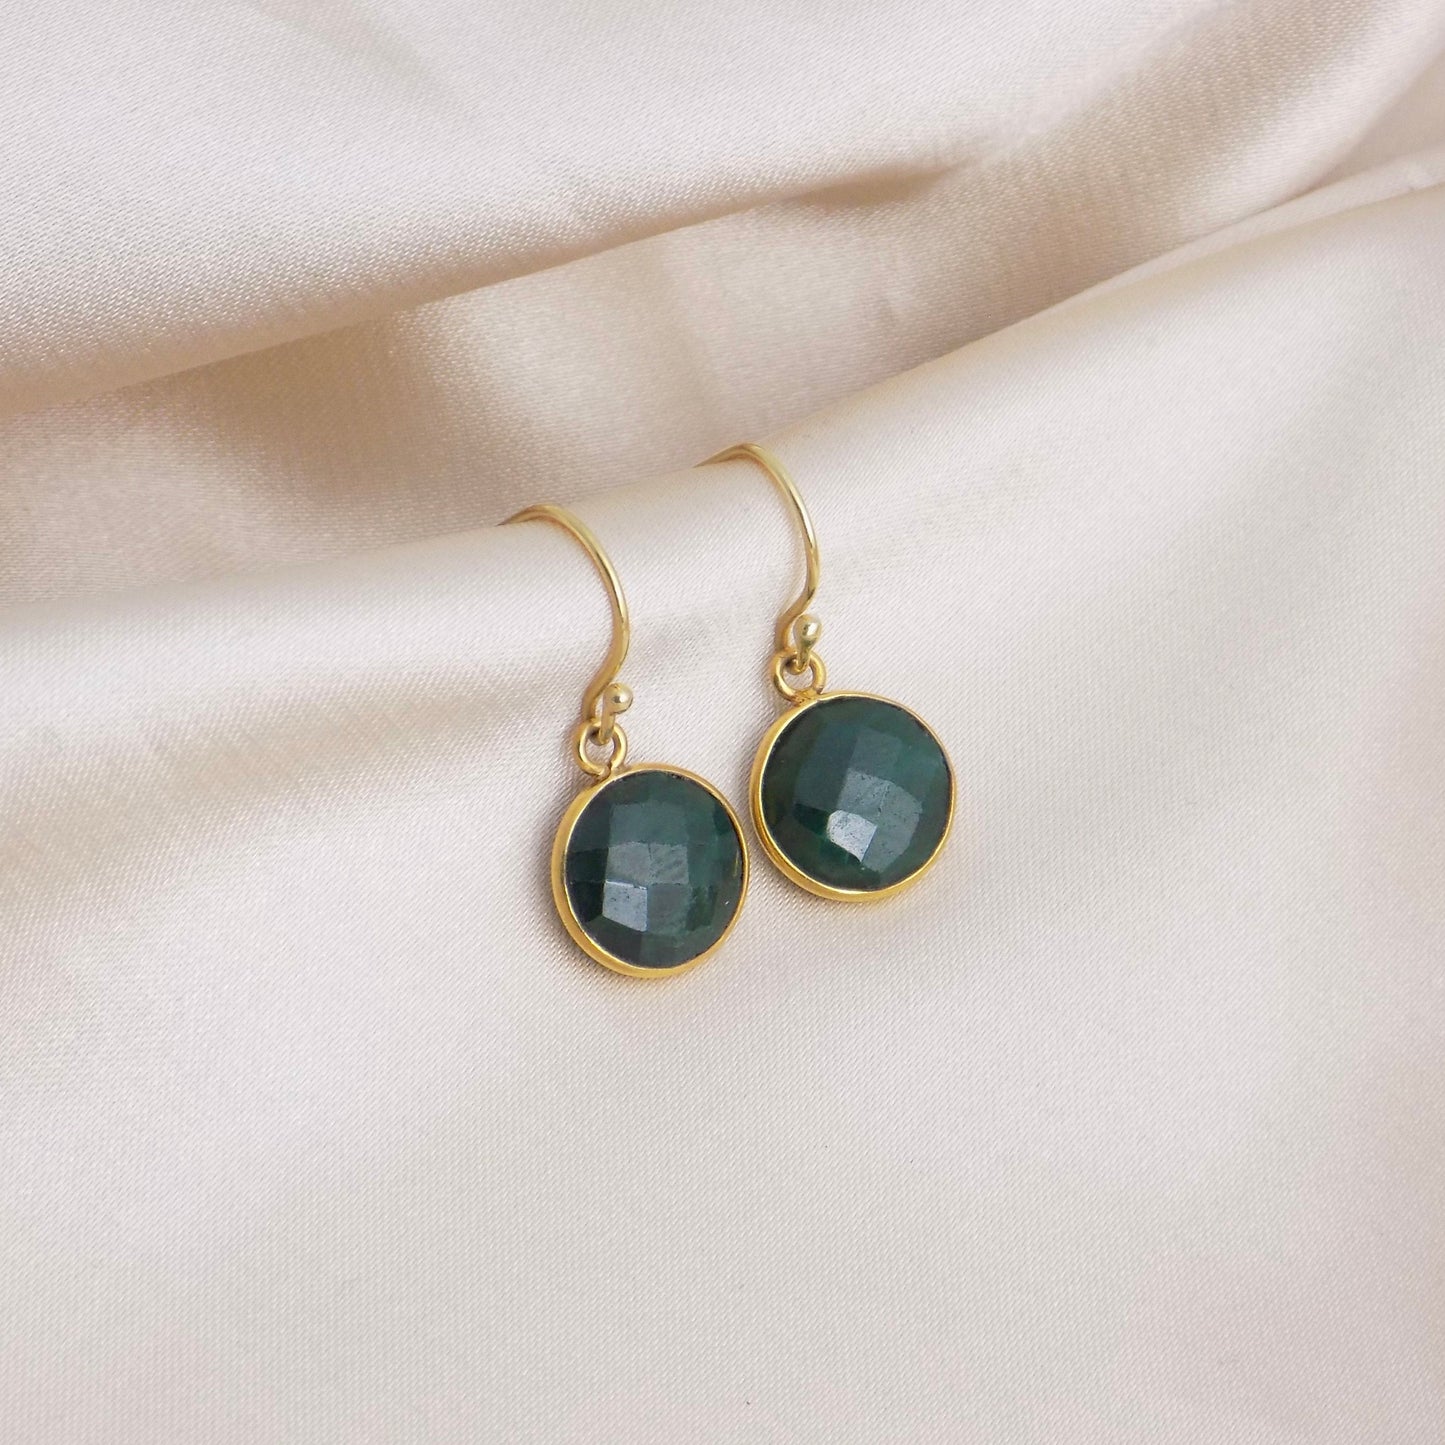 Emerald Earrings Gold, May Birthstone Earrings, Green Stone Earrings Round, Teacher Gift Women, M6-151